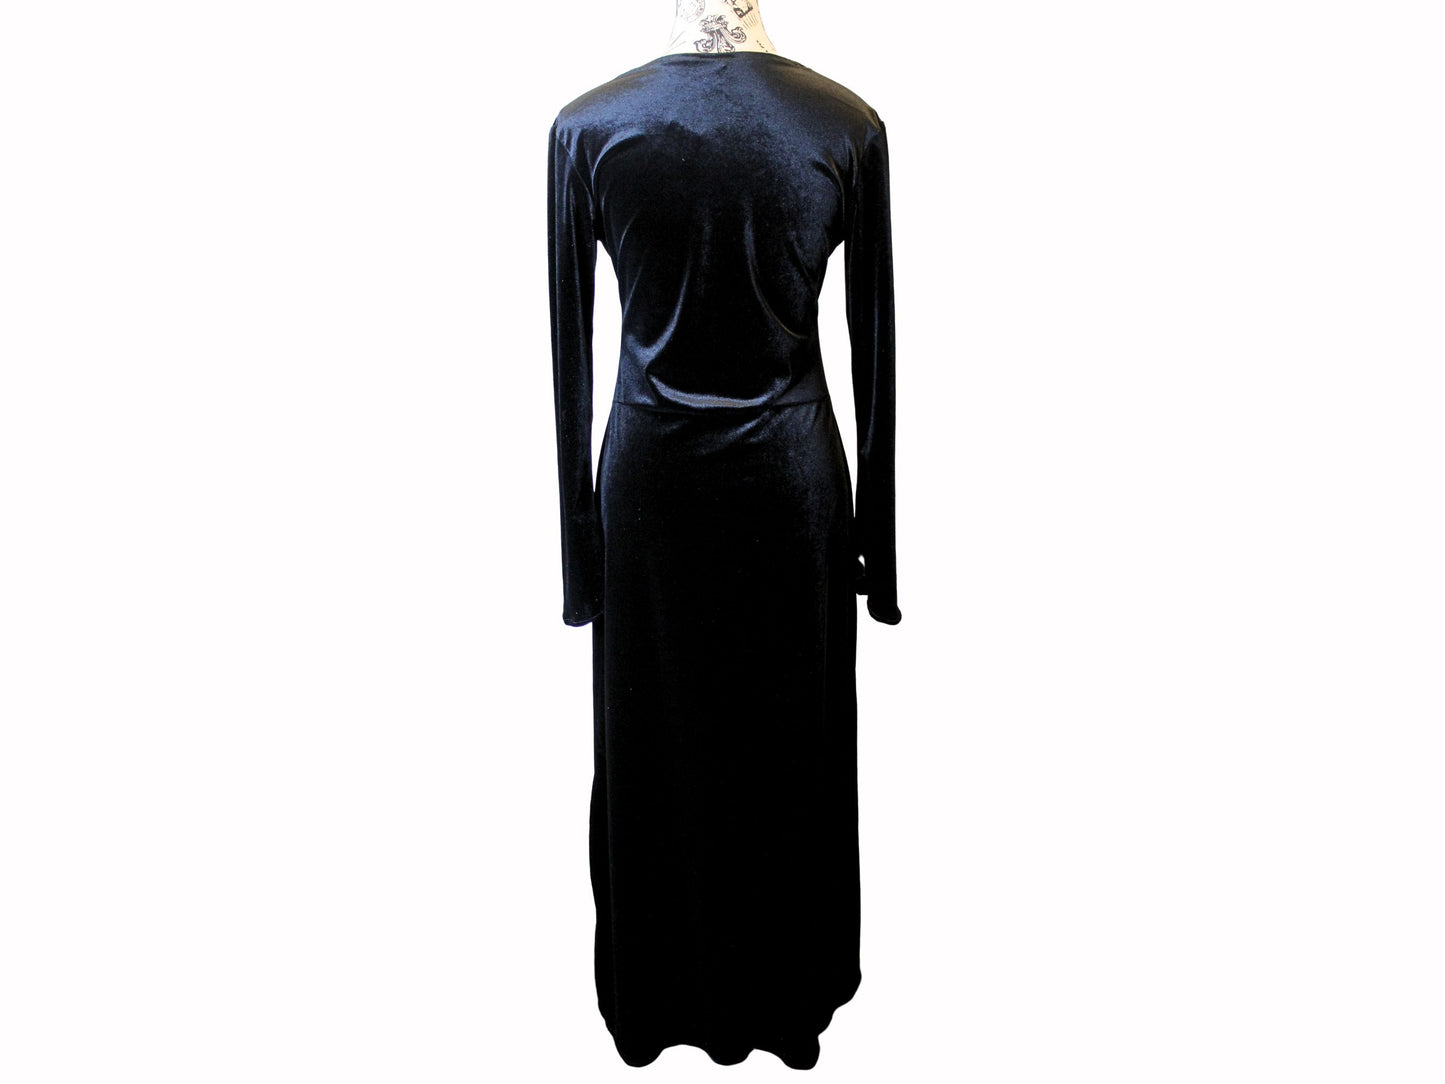 The VM Long Velvet Vamp Dress